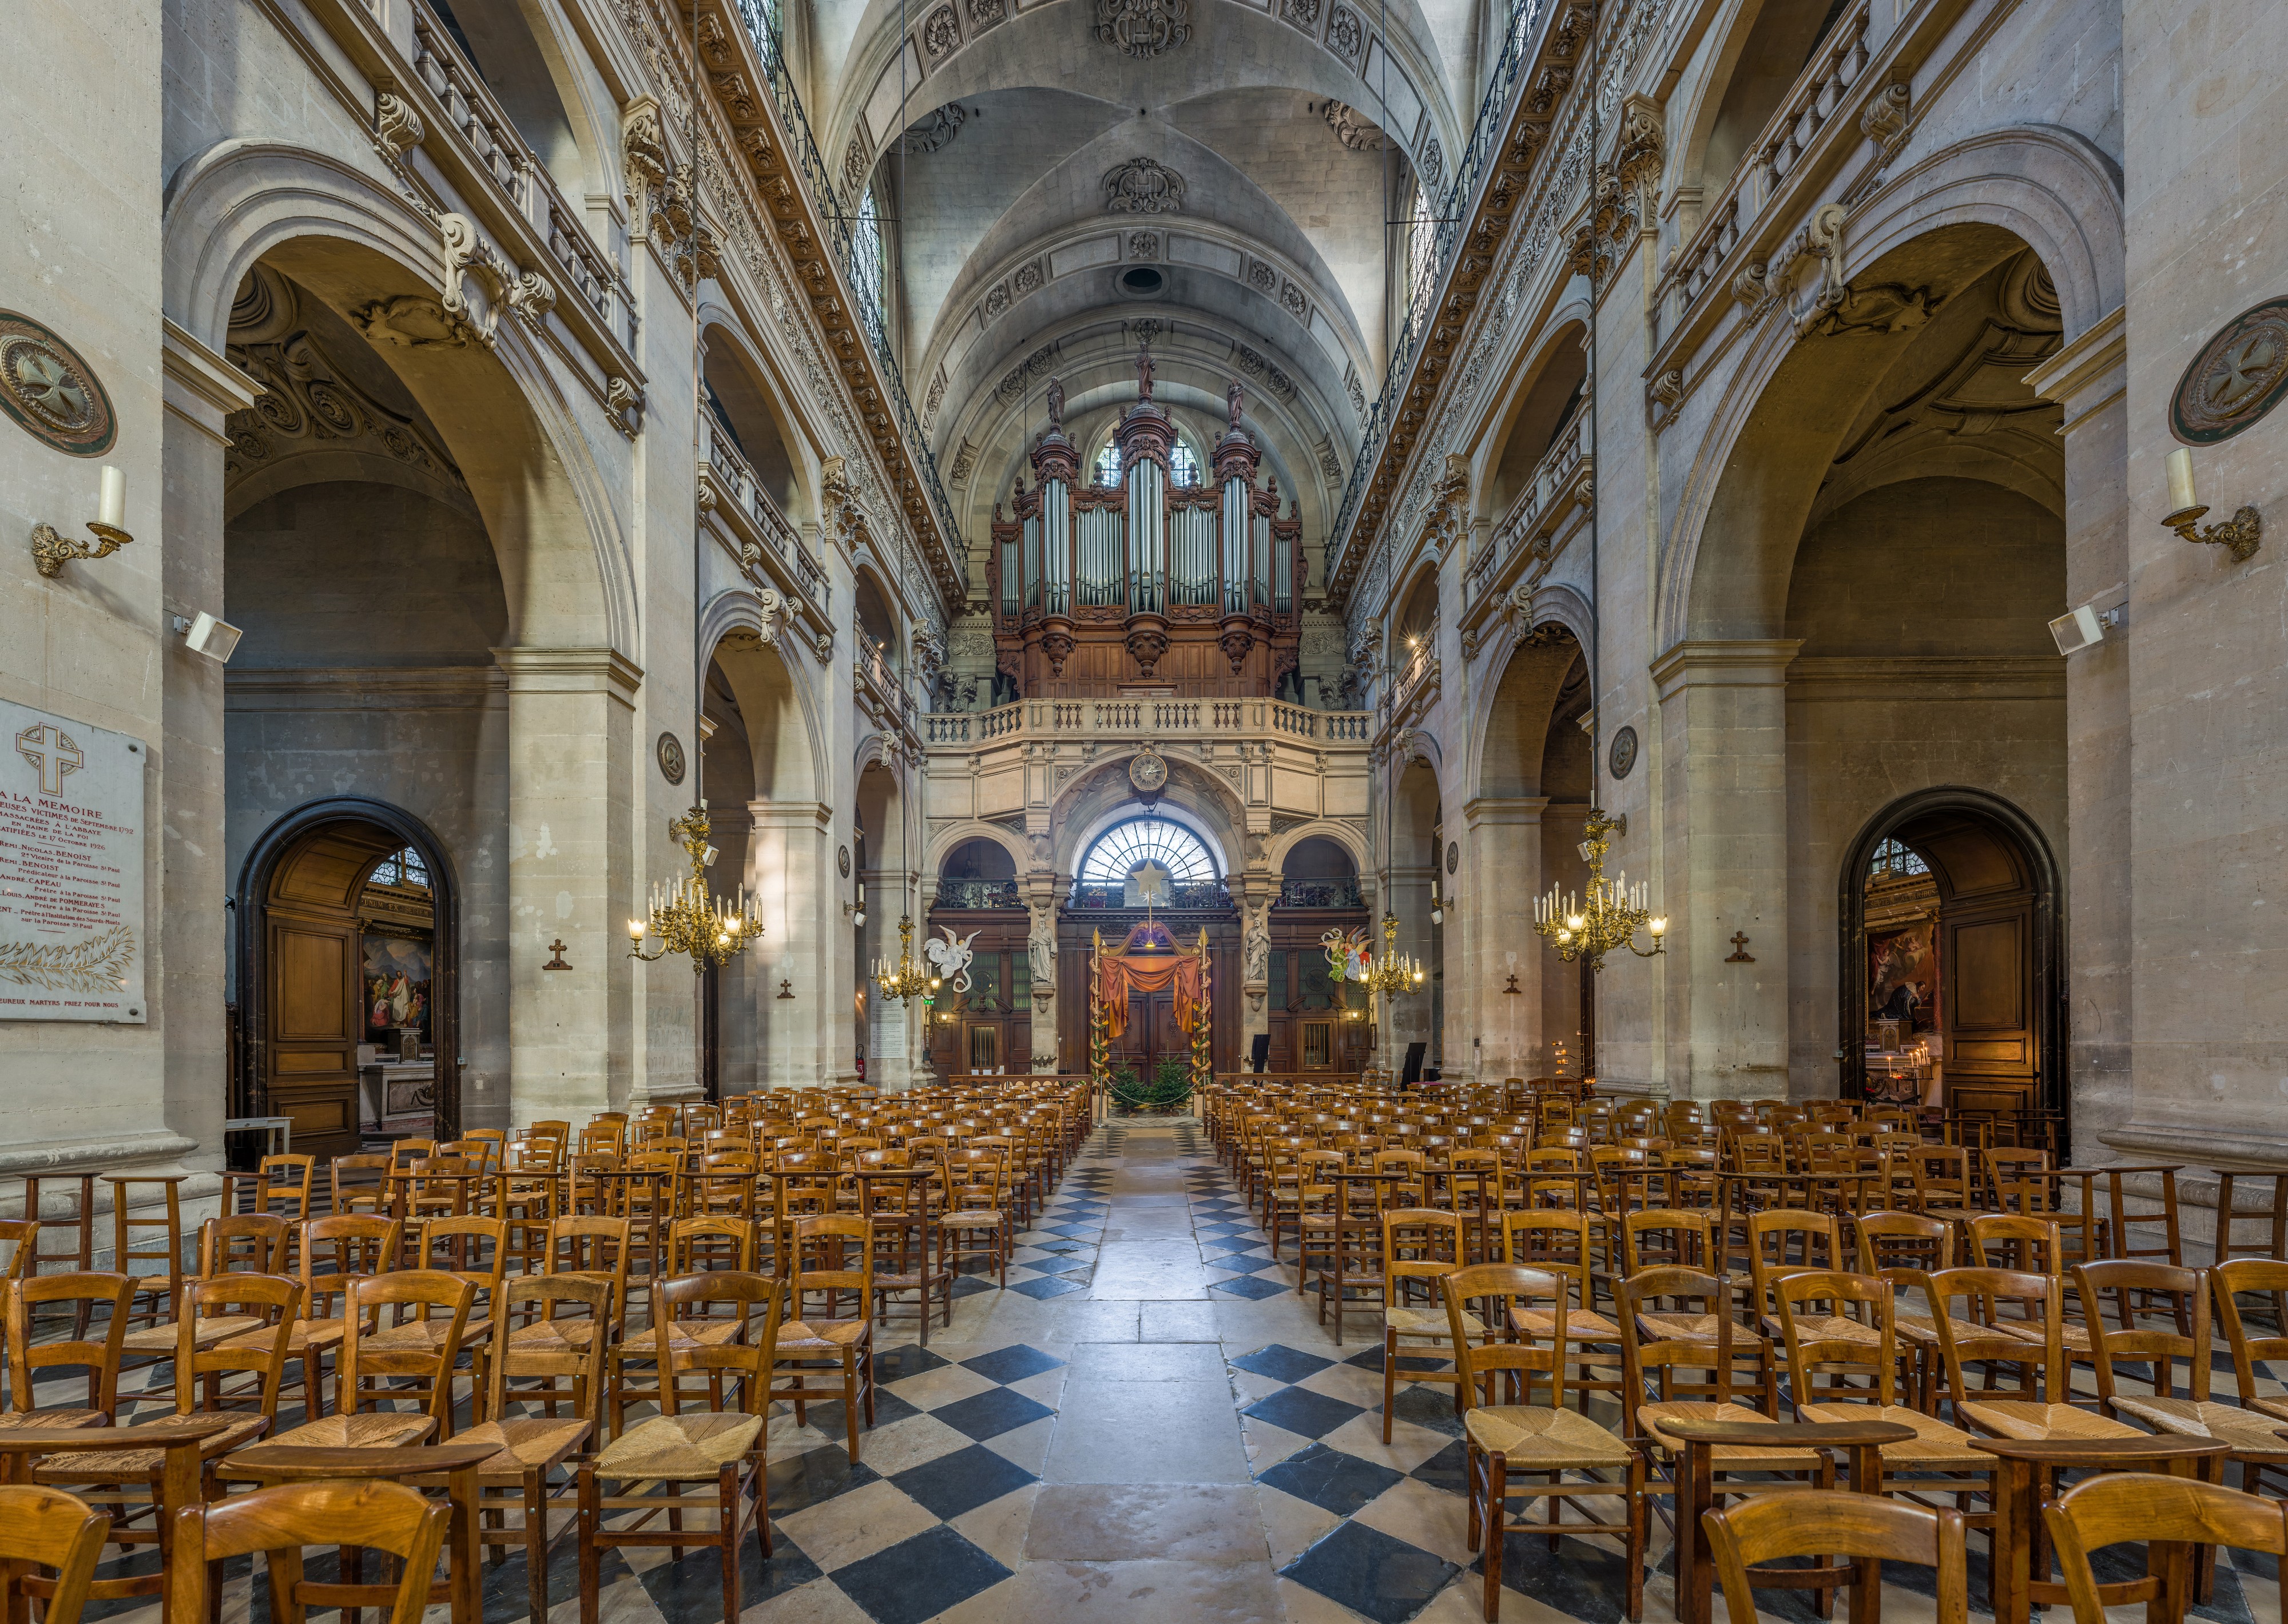 Saint-Paul-Saint-Louis Church Interior 2, Paris, France